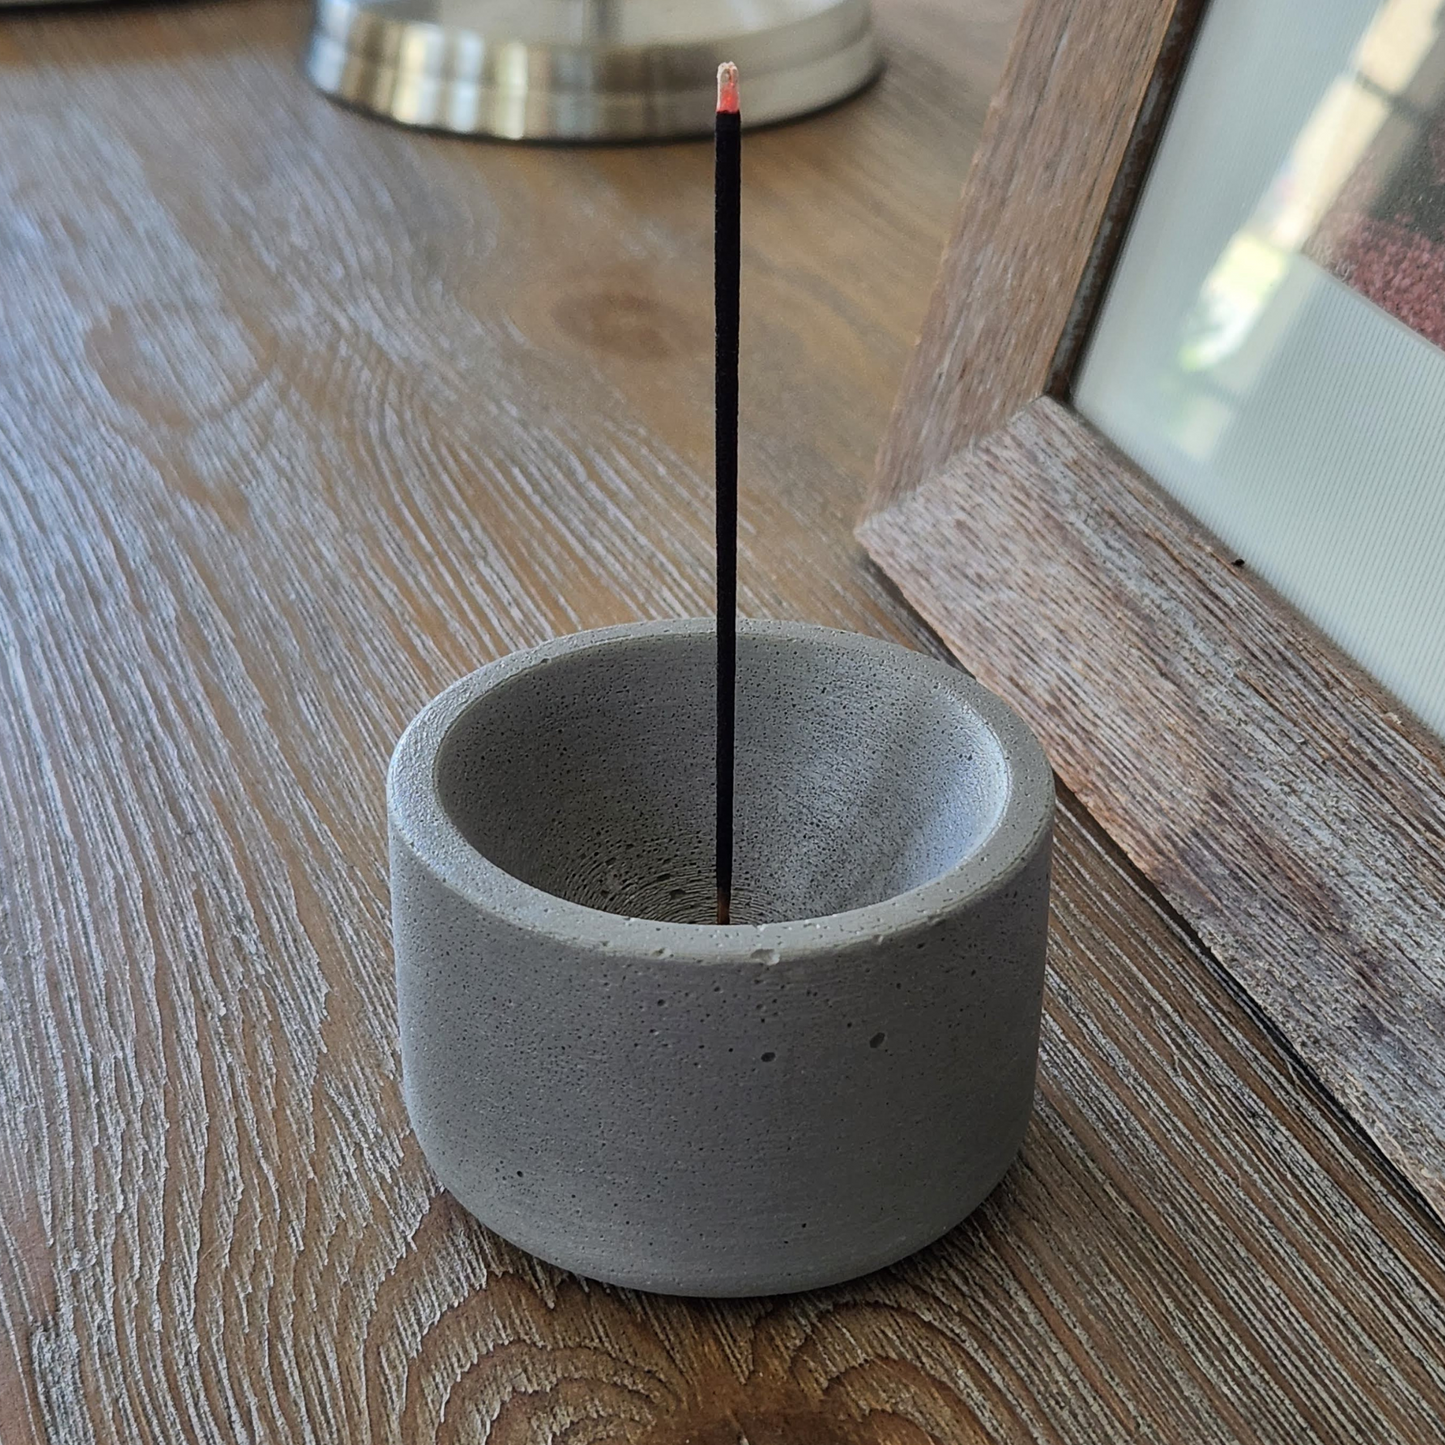 3"x2" Incense Holder | Concrete Cylinder